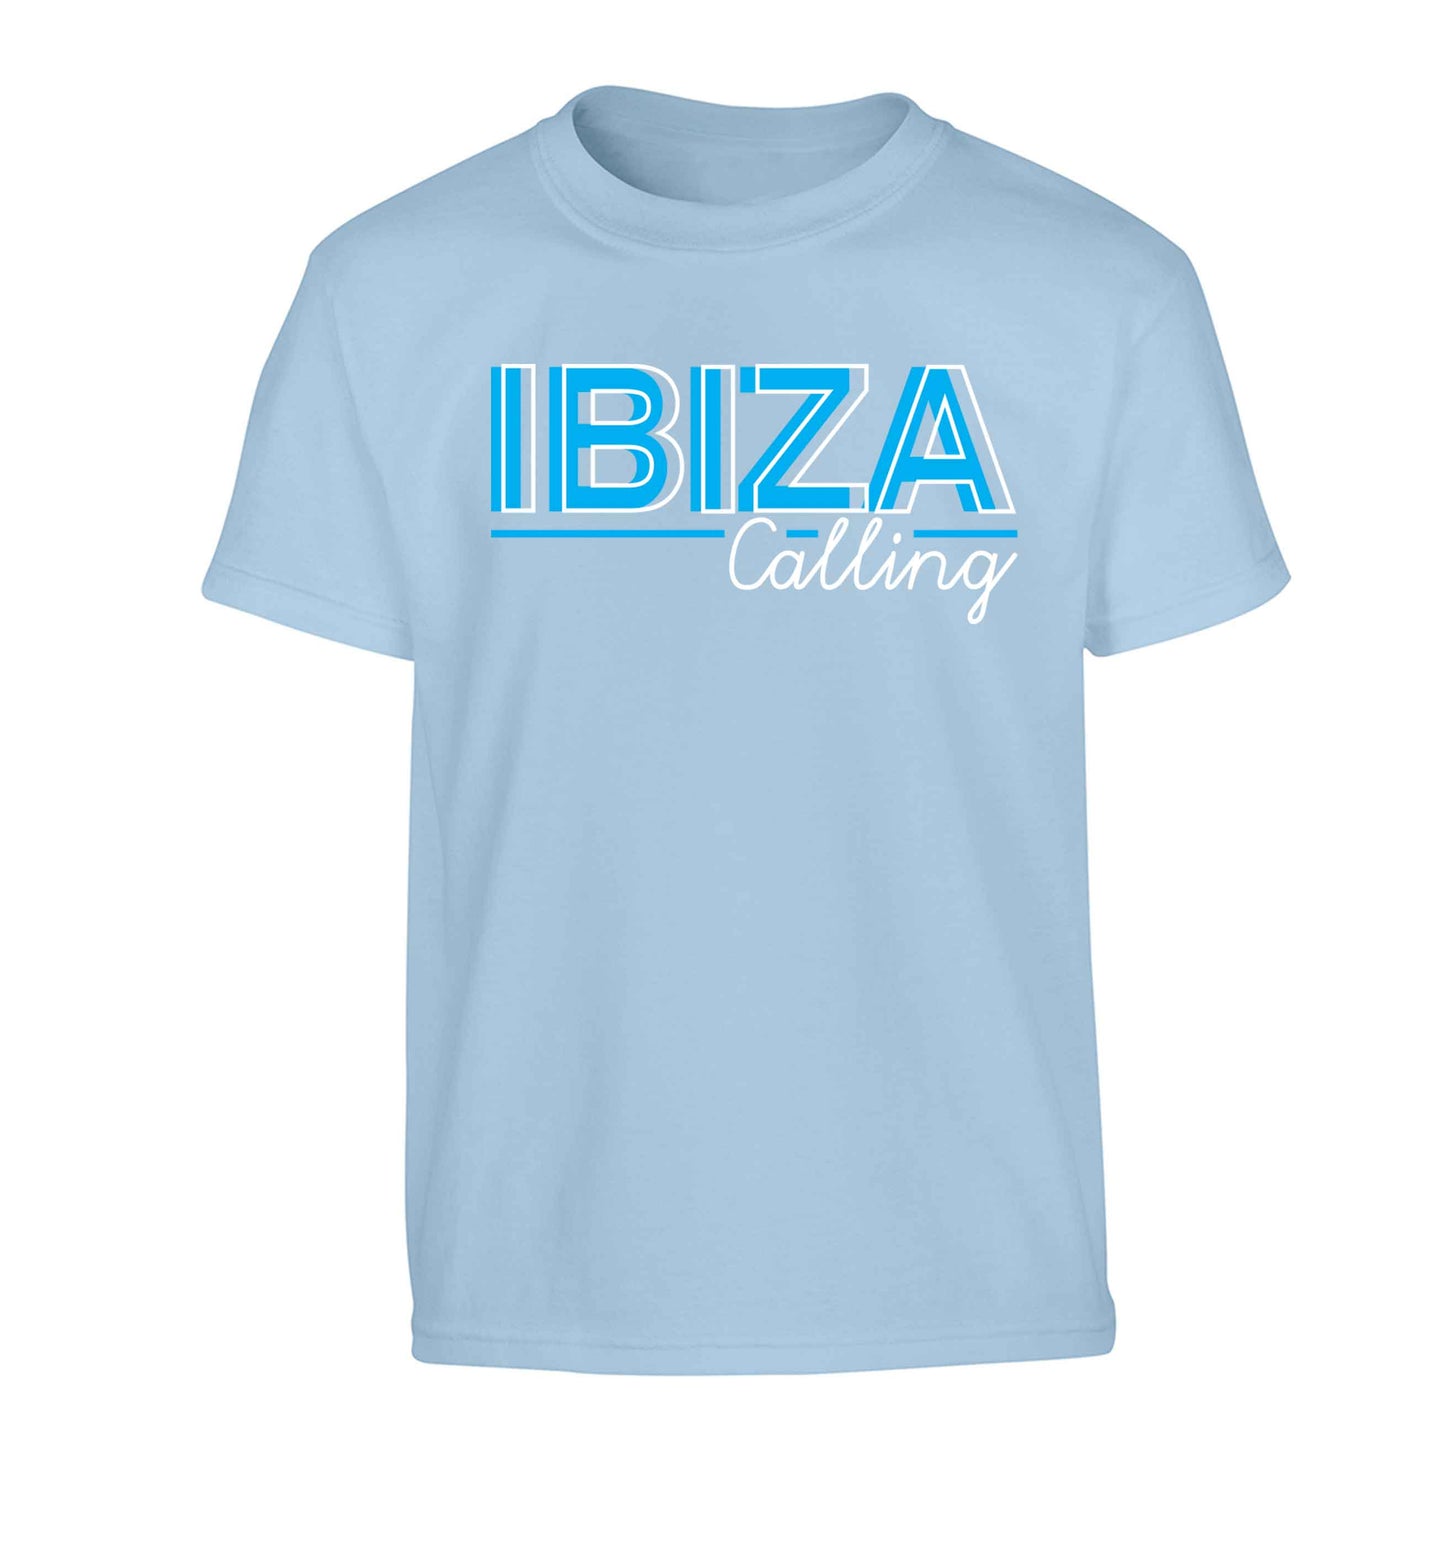 Ibiza calling Children's light blue Tshirt 12-13 Years